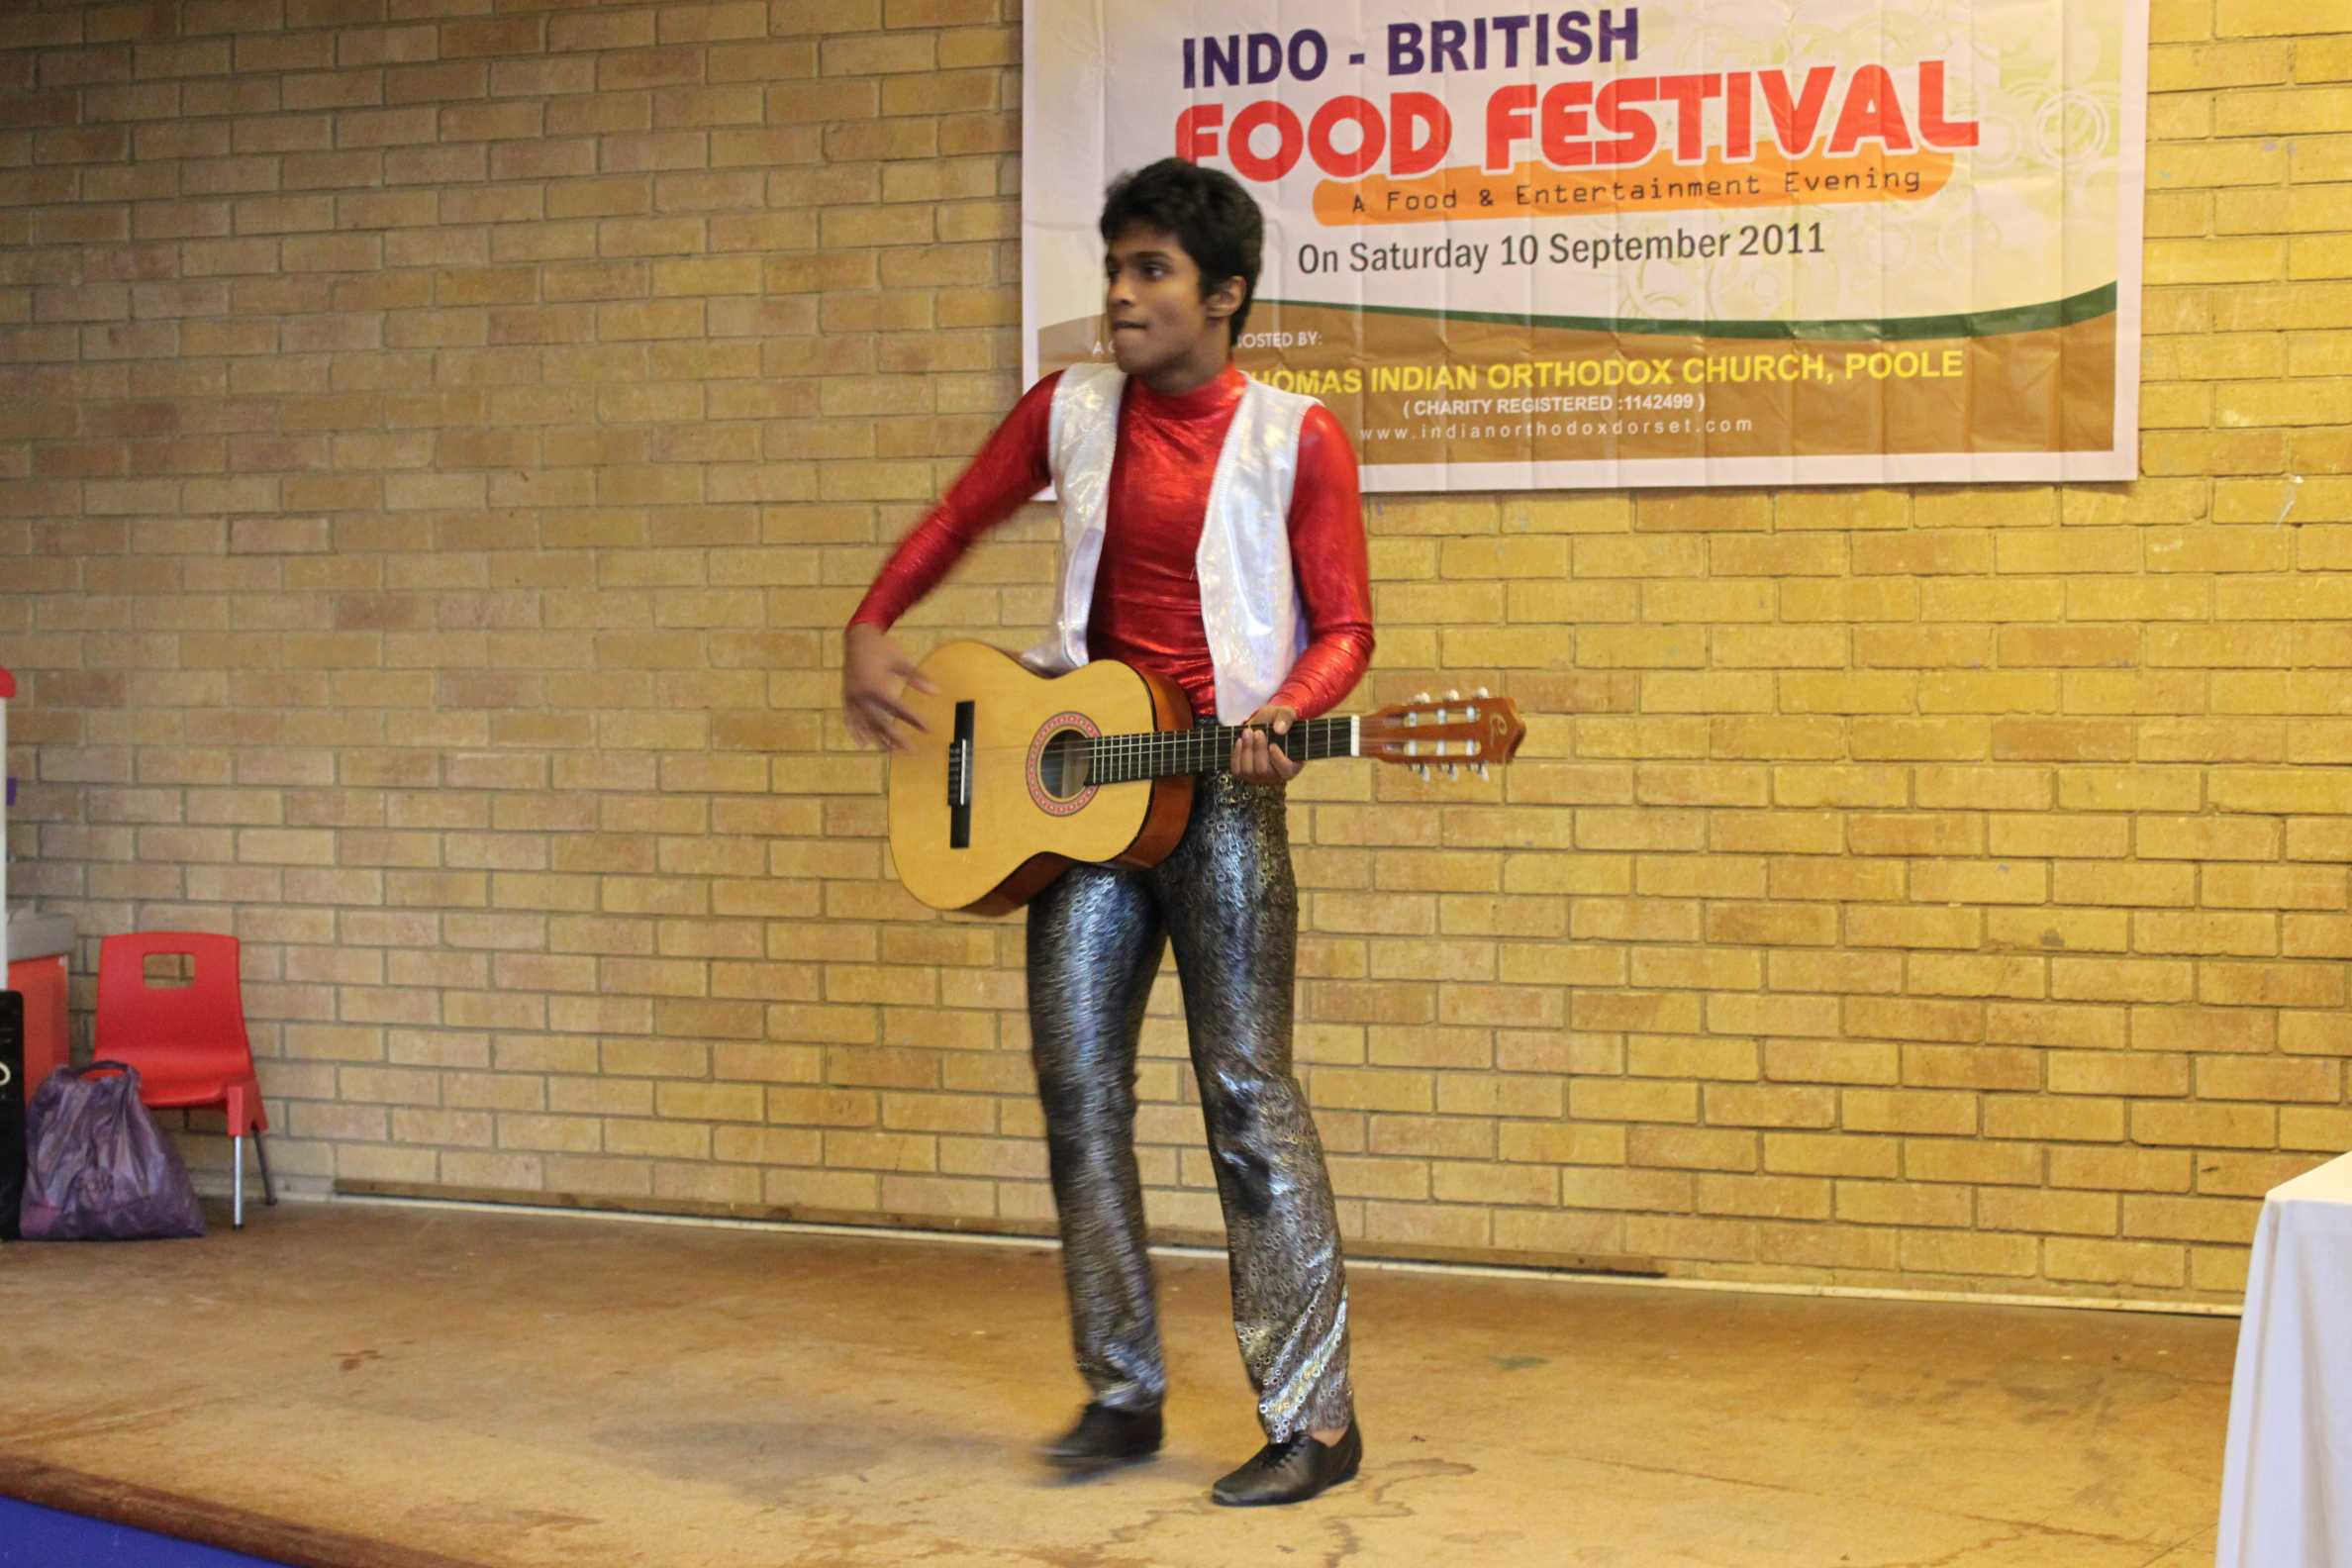 INDO BRITISH FOOD FESTIVAL 2011